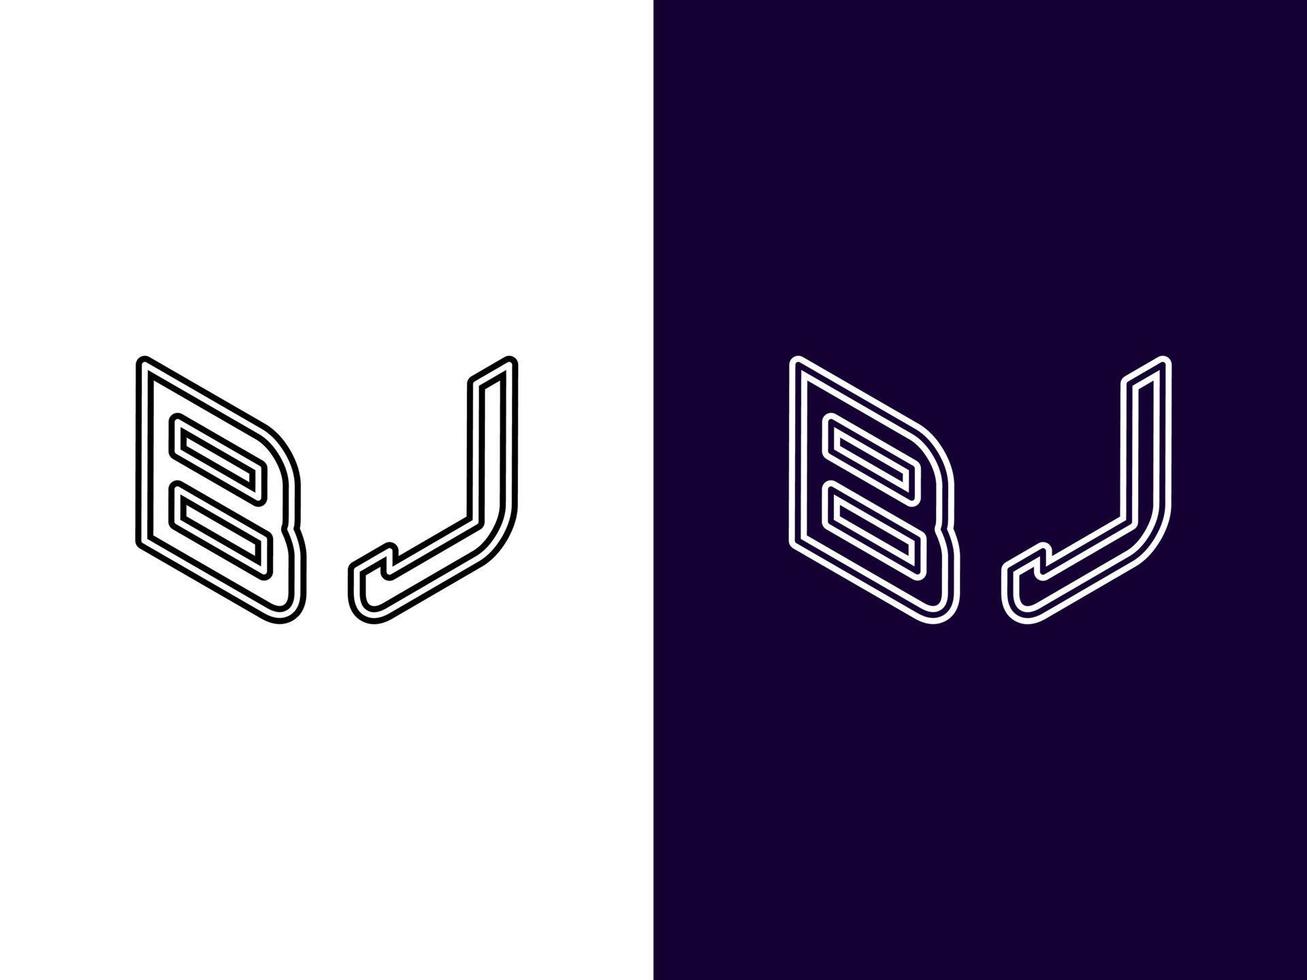 lettre initiale bj création de logo 3d minimaliste et moderne vecteur